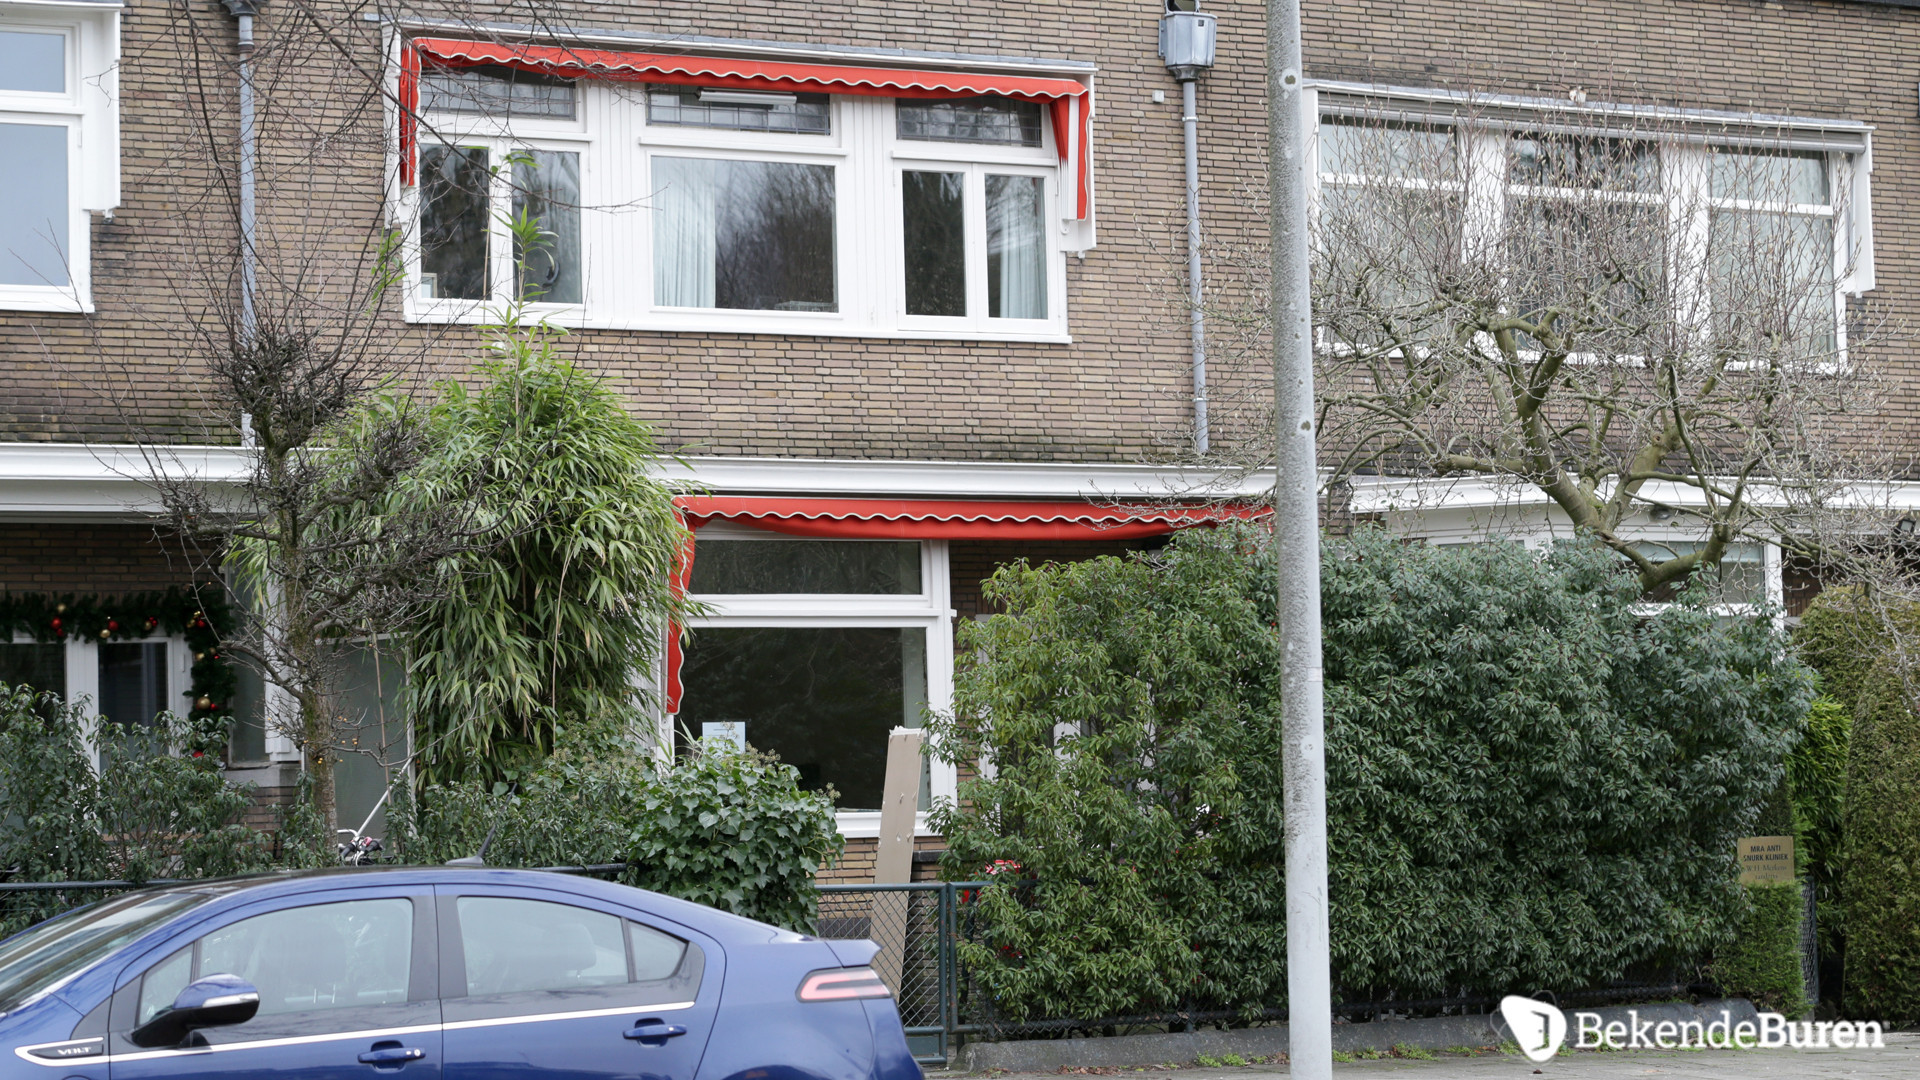 Martijn Krabbe verbouwt zijn woning zonder kijken. Zie fotos 3